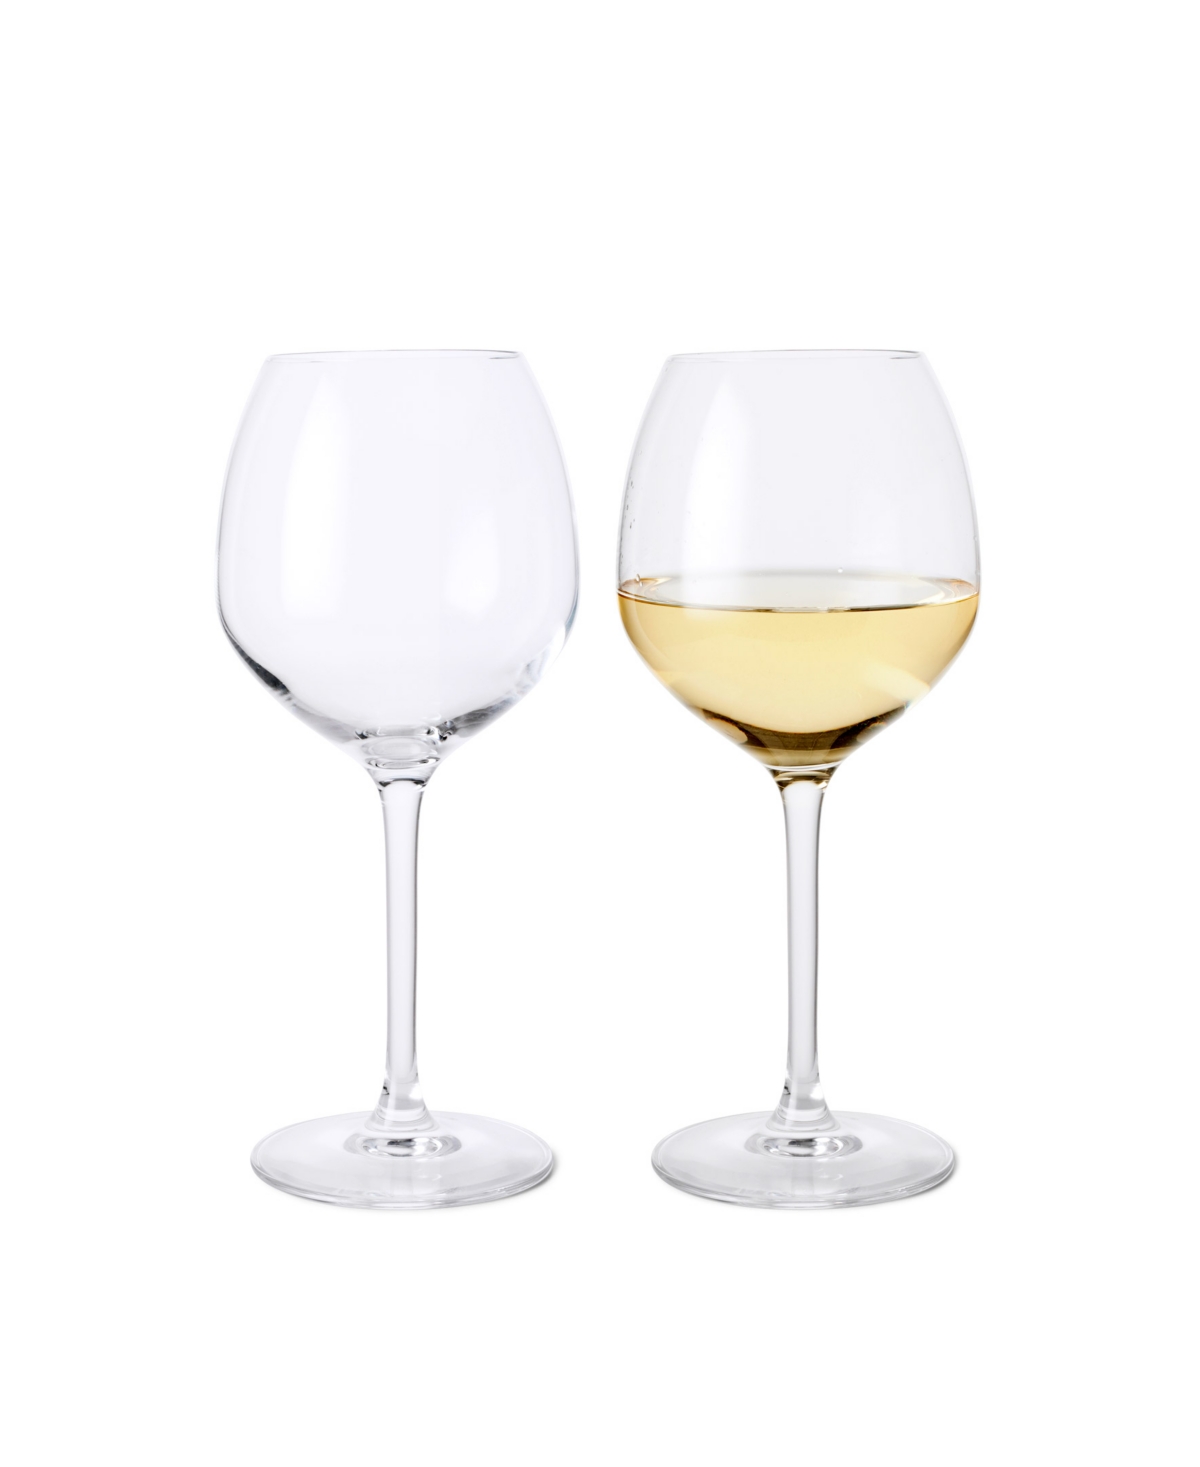 Rosendahl 18.03 oz Wine Glasses, Set Of 2 In Clear